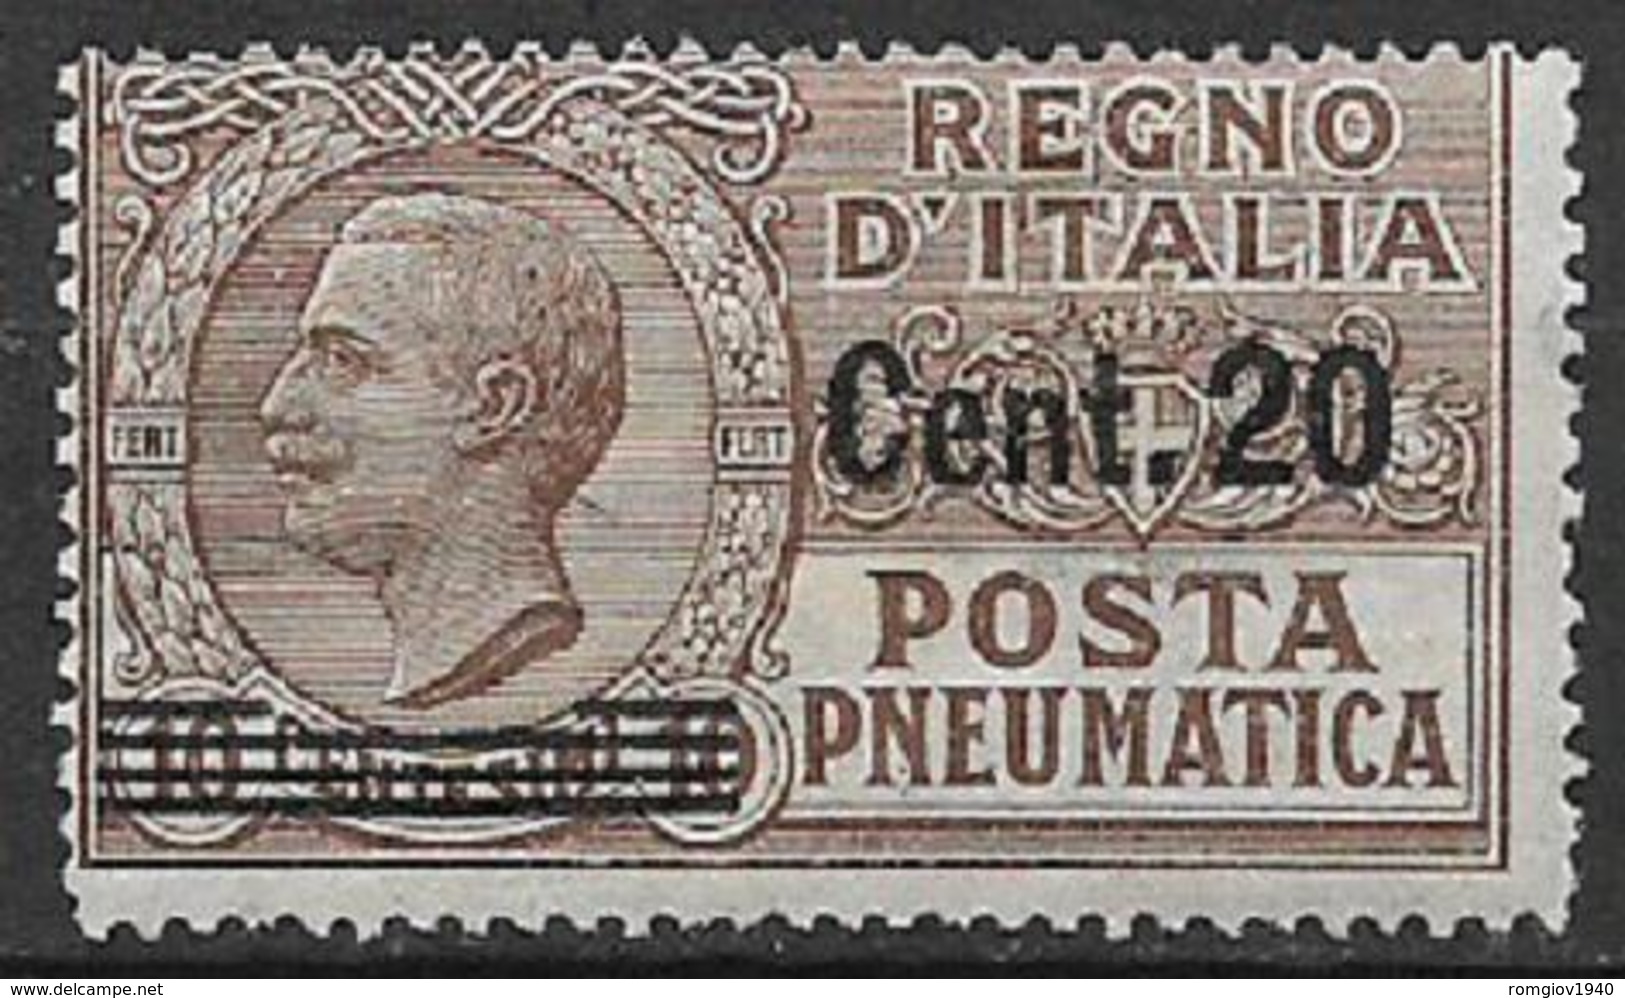 REGNO D'ITALIA POSTA PNEUMATICA 1913-23  EFFIGE DI V.EMANUELE III  SASS. 5 MNH XF - Pneumatische Post